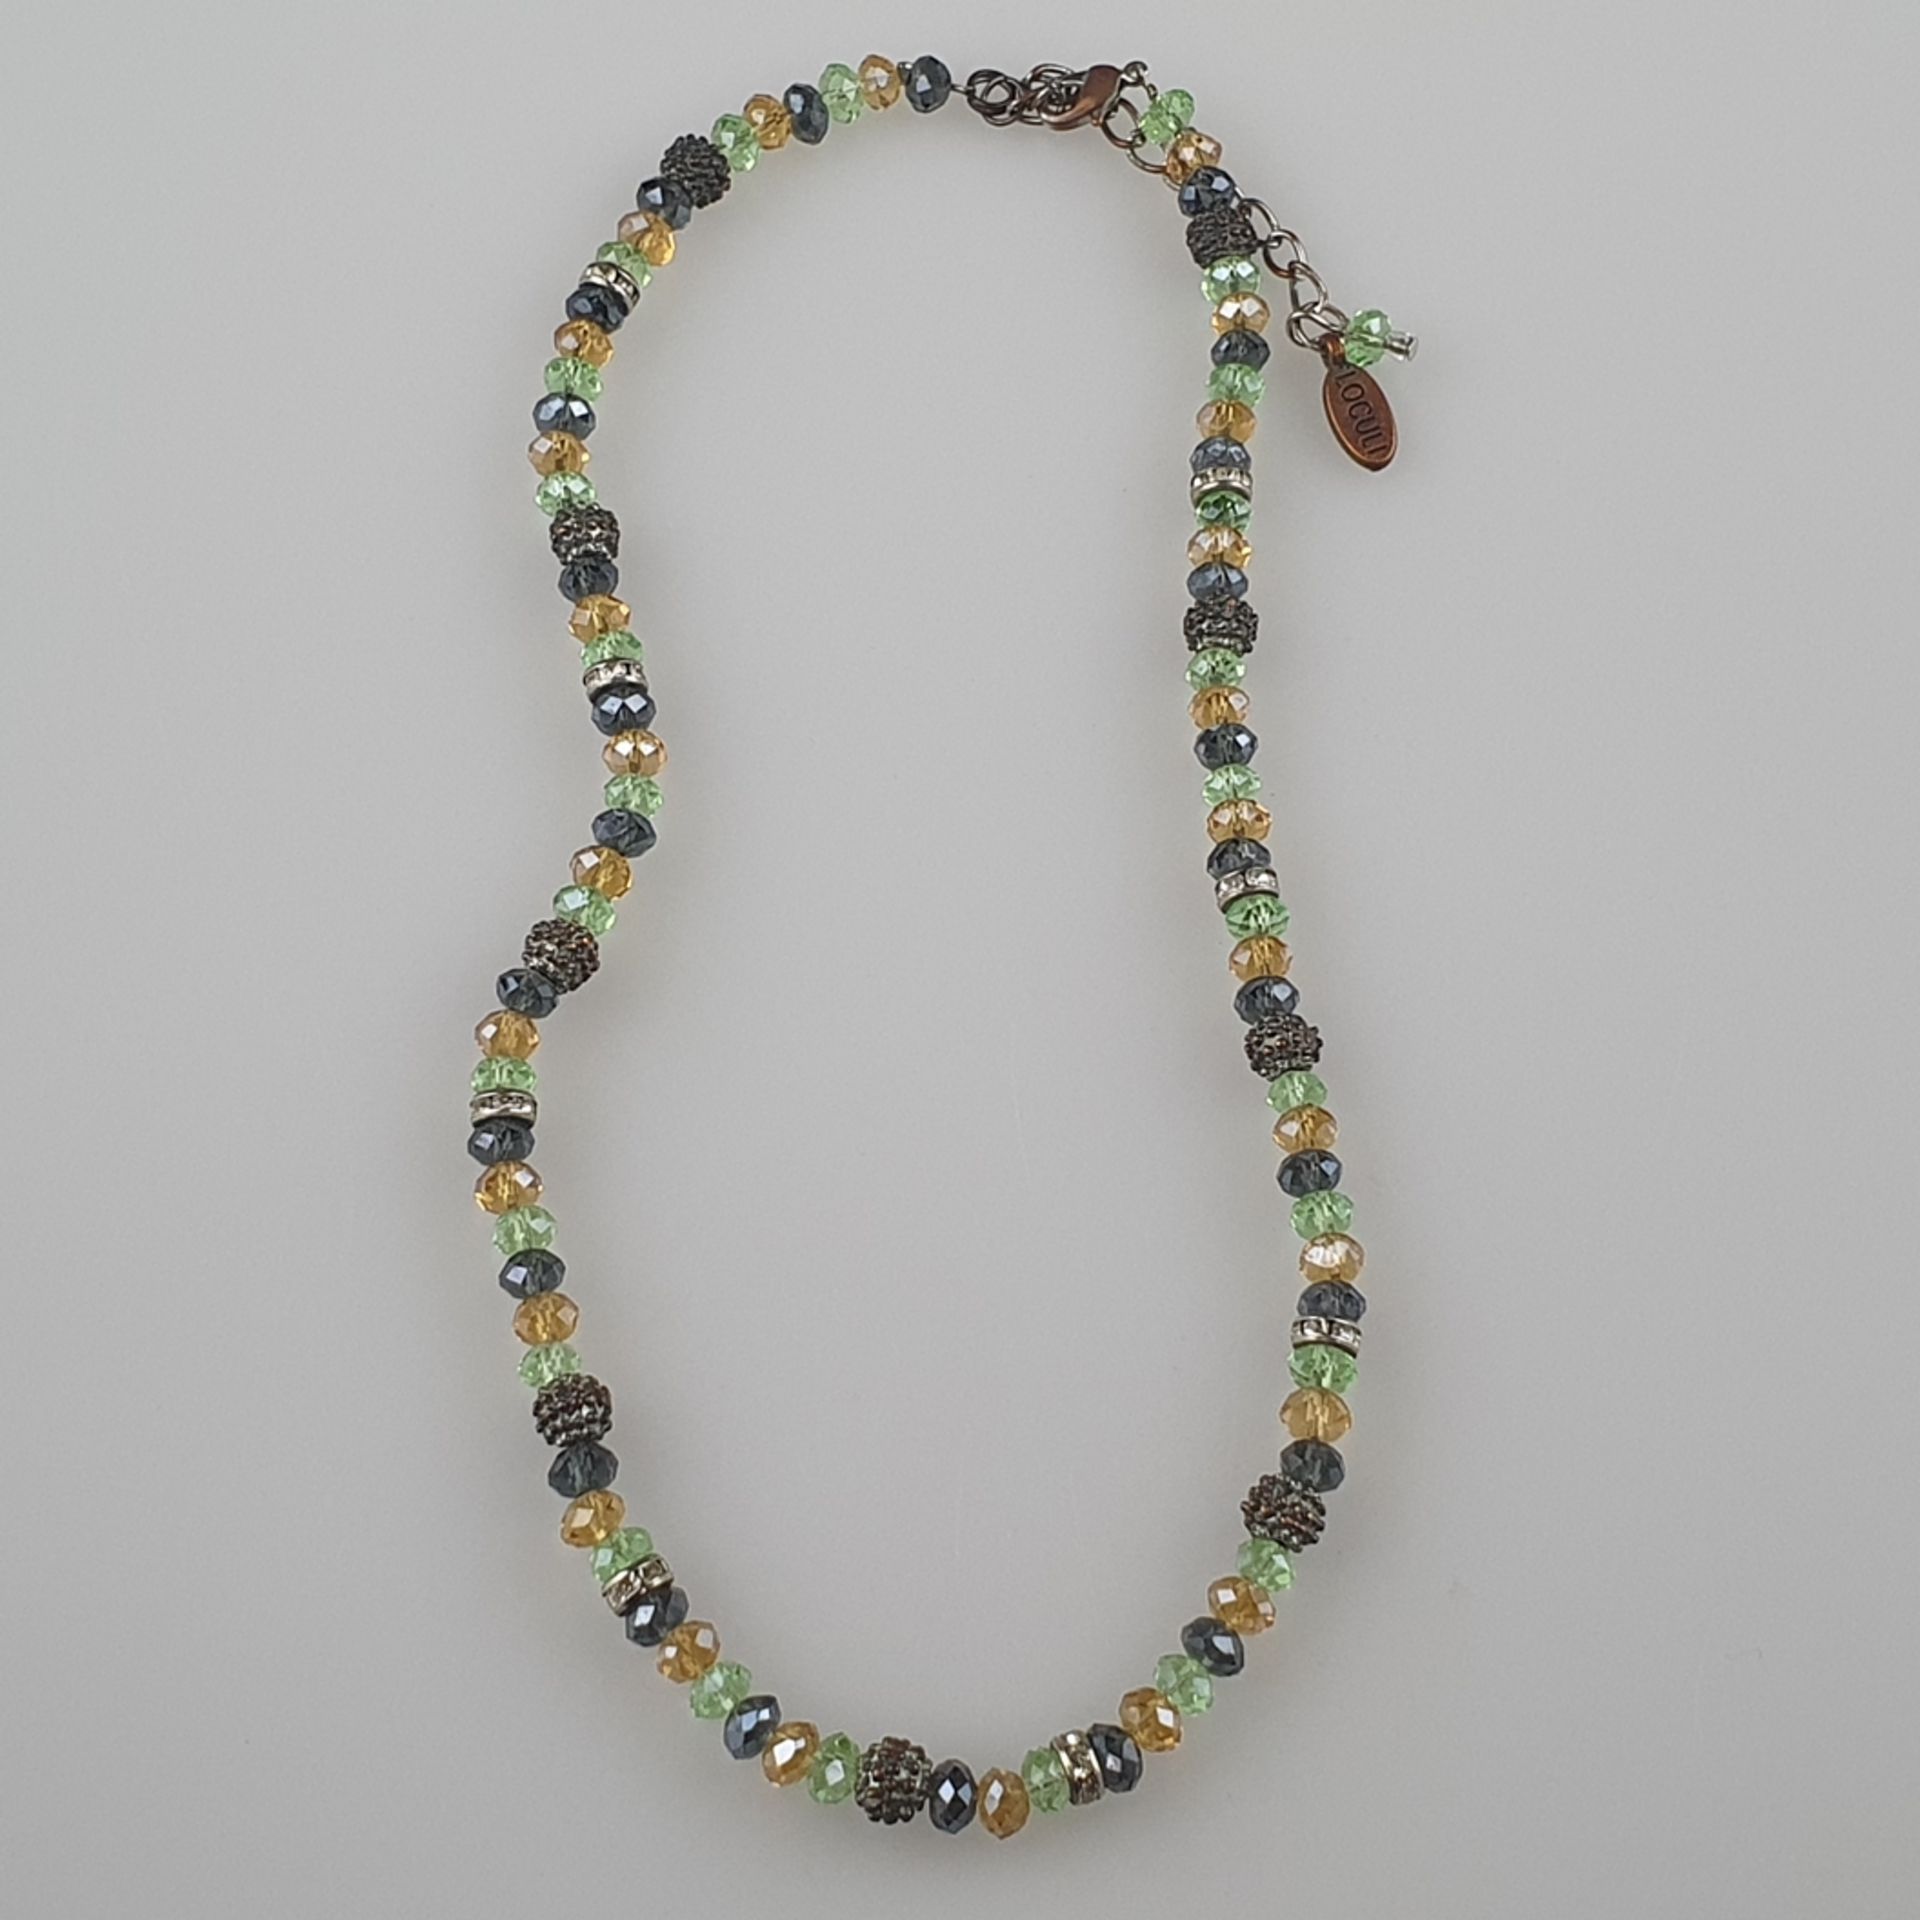 Halskette - LOCULI, facettierte Turmaline in Gelb, Grün und Violetttönen, mit Silbereinschüben, L.c - Bild 3 aus 5